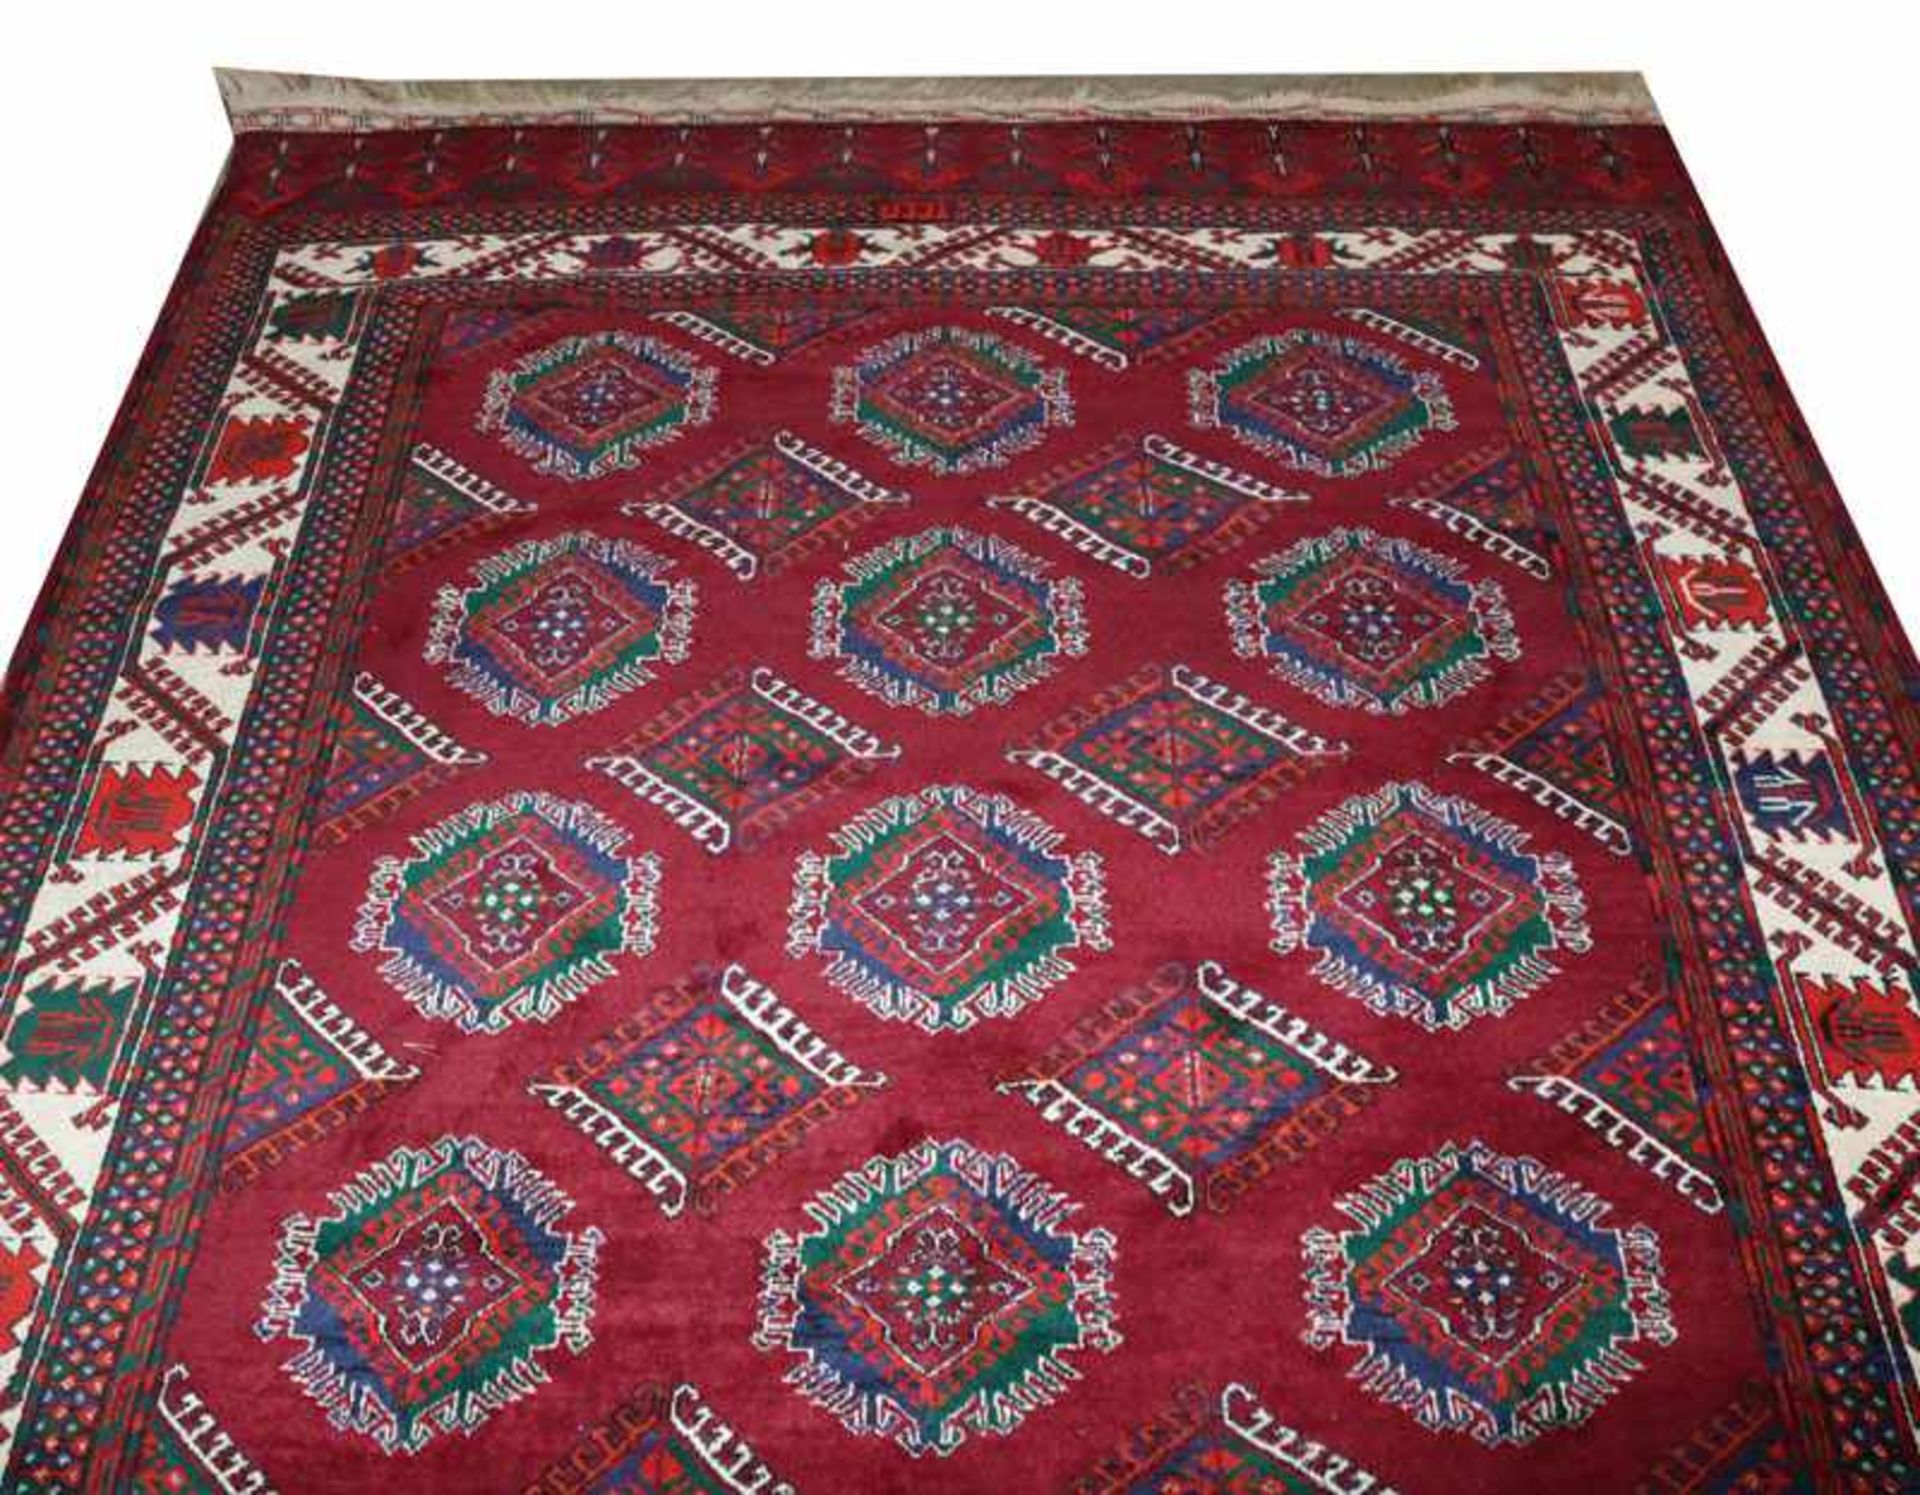 Teppich, Turkmene, rot/beige/blau/grün, 271 cm x 190 cm, Gebrauchsspuren